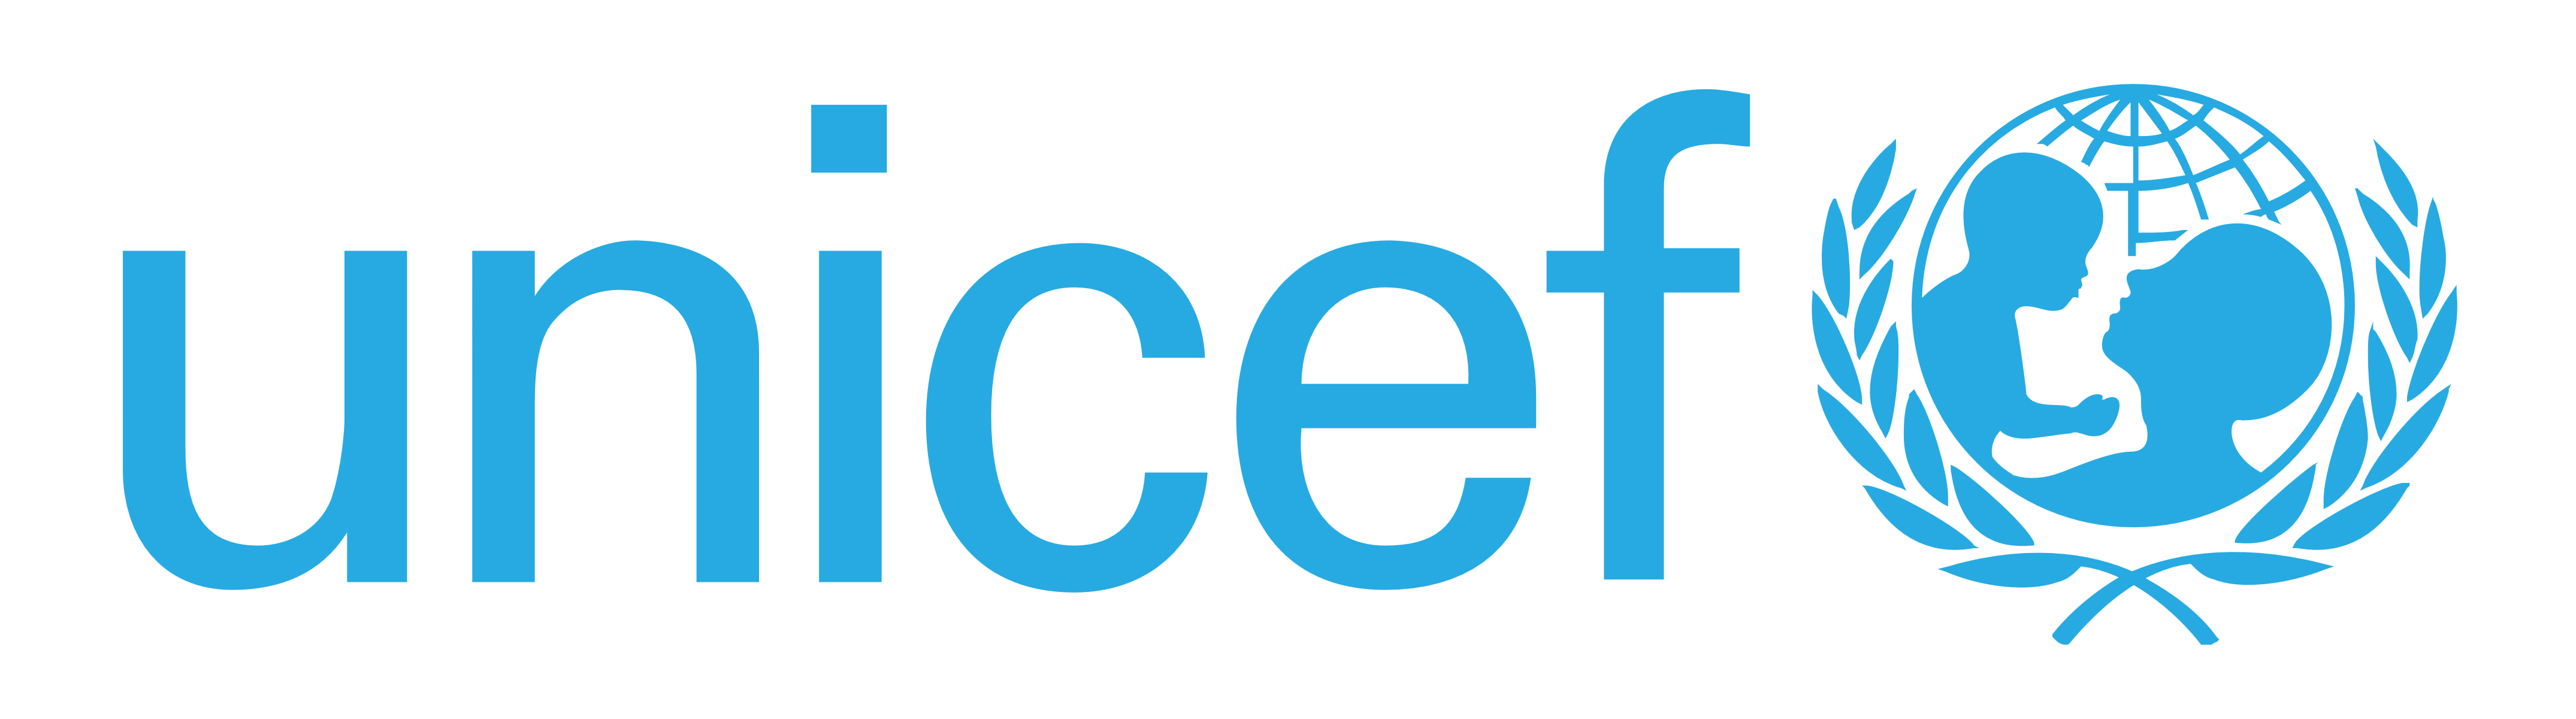 UNICEF logo, logotype